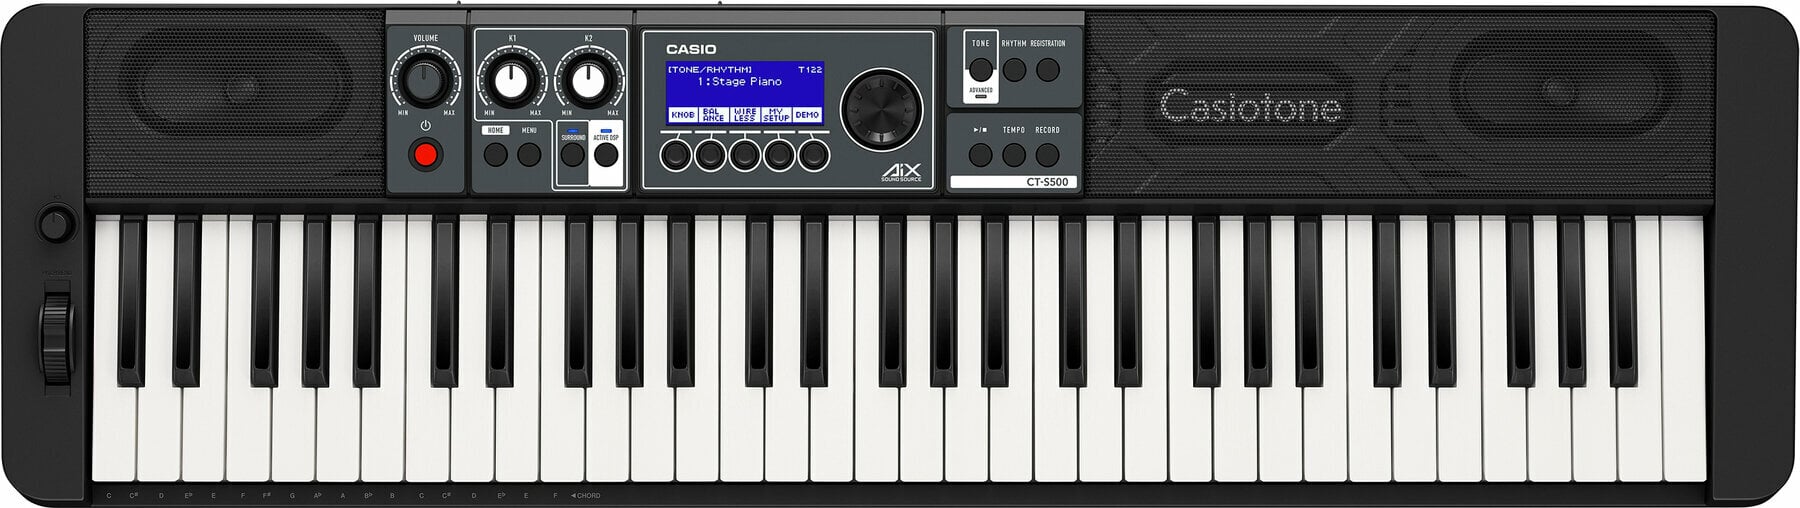 Keyboard mit Touch Response Casio CT-S500